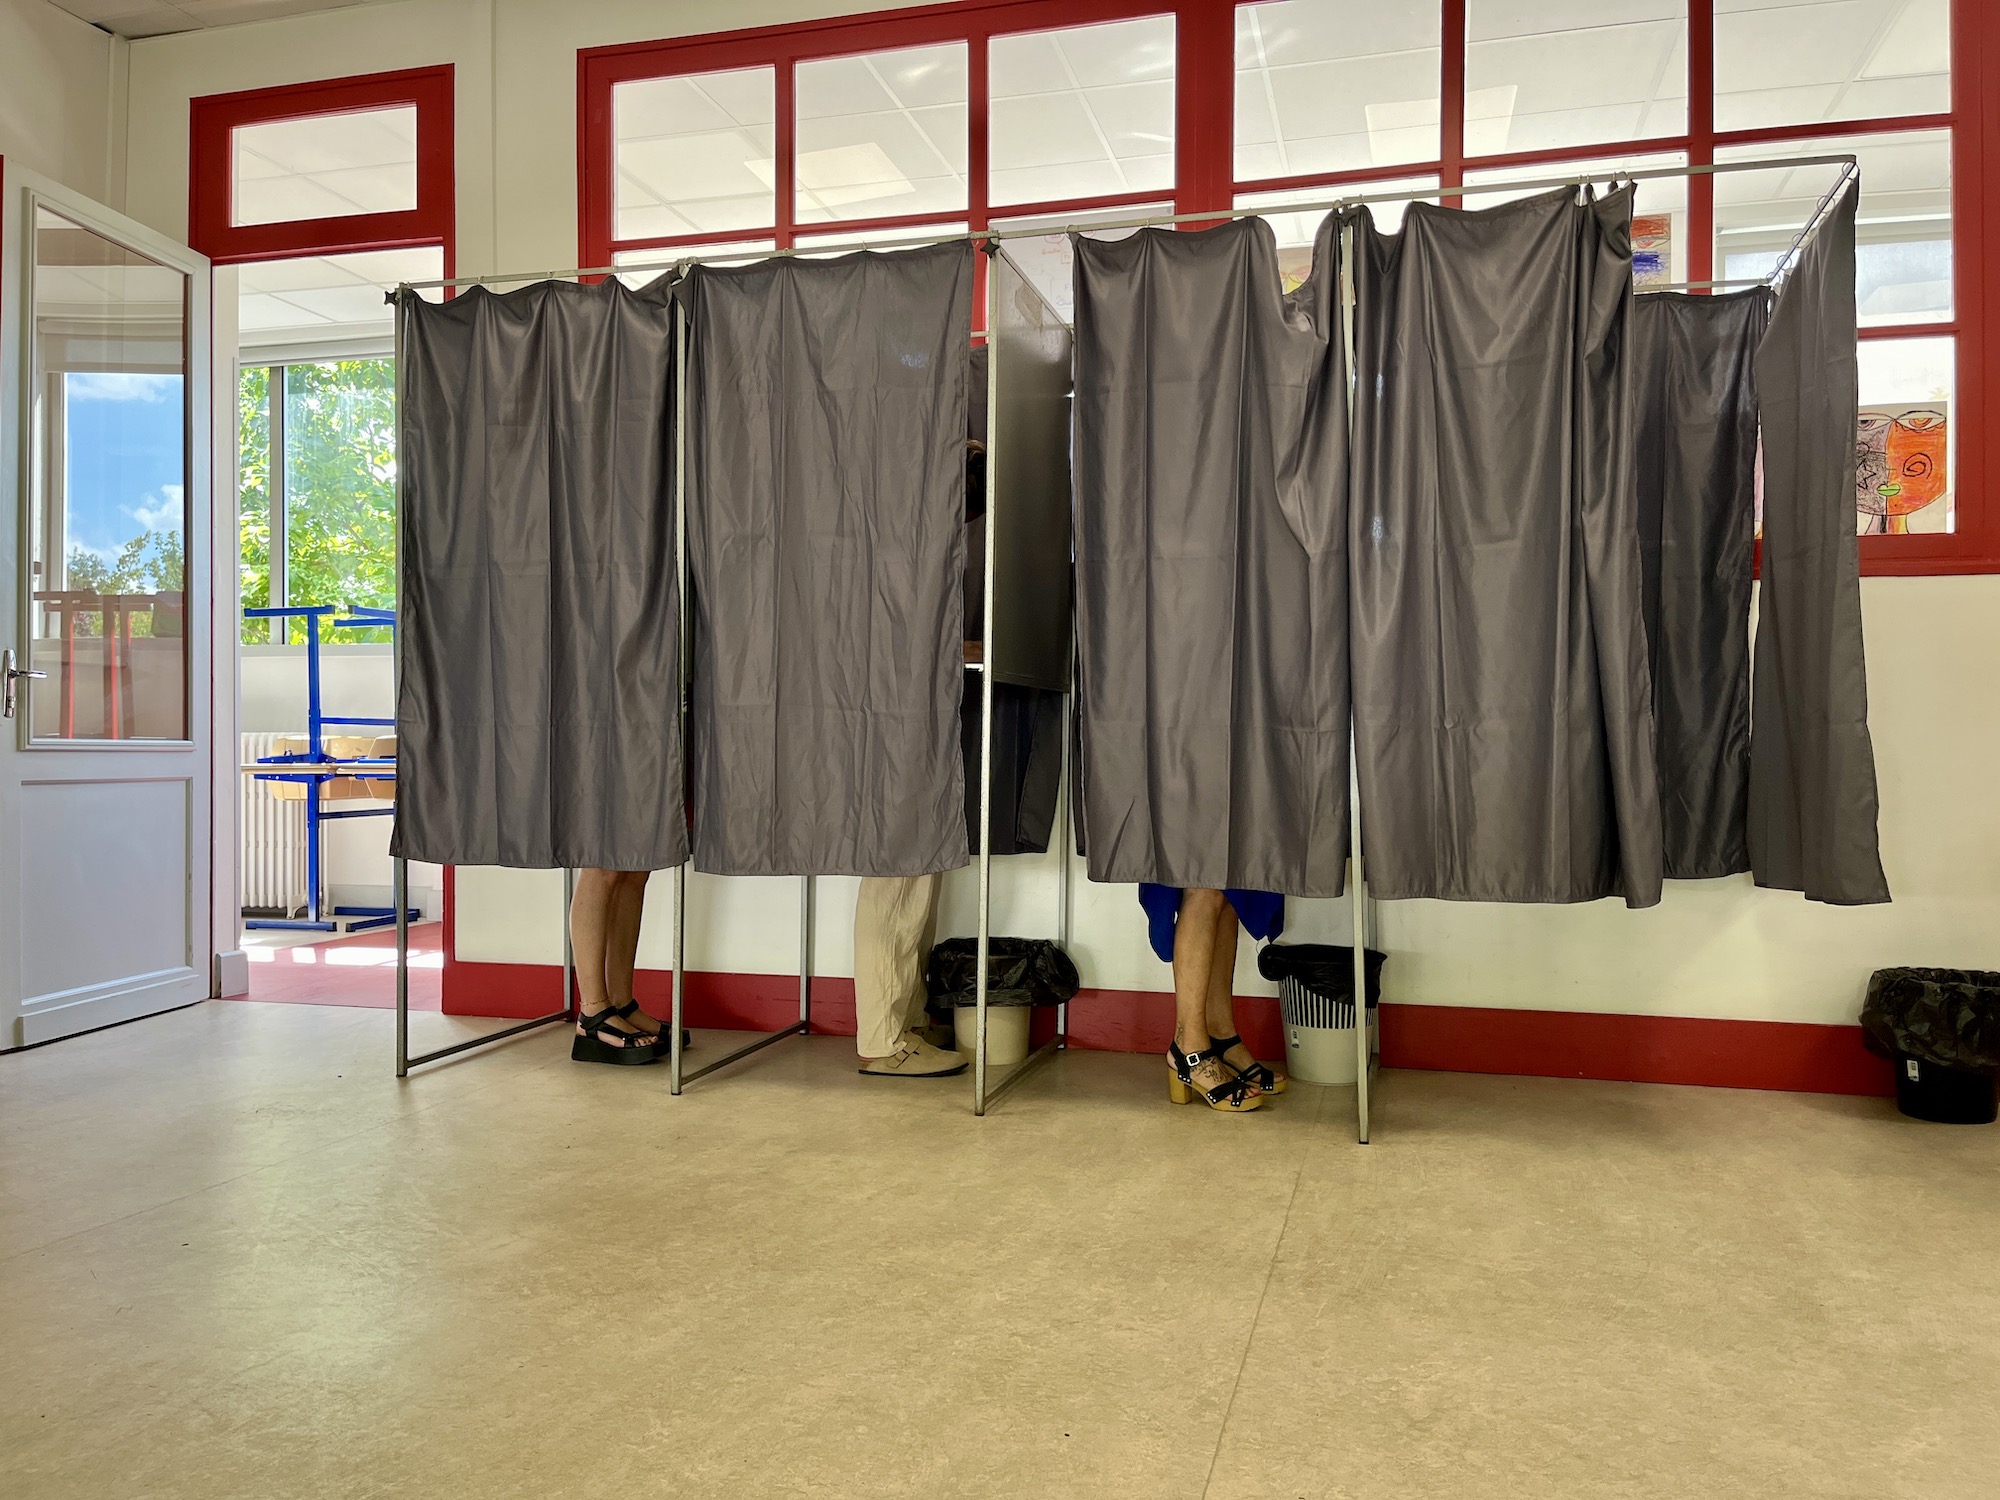 Les voix inaudibles des candidats éliminés au premier tour des législatives en Nouvelle-Aquitaine